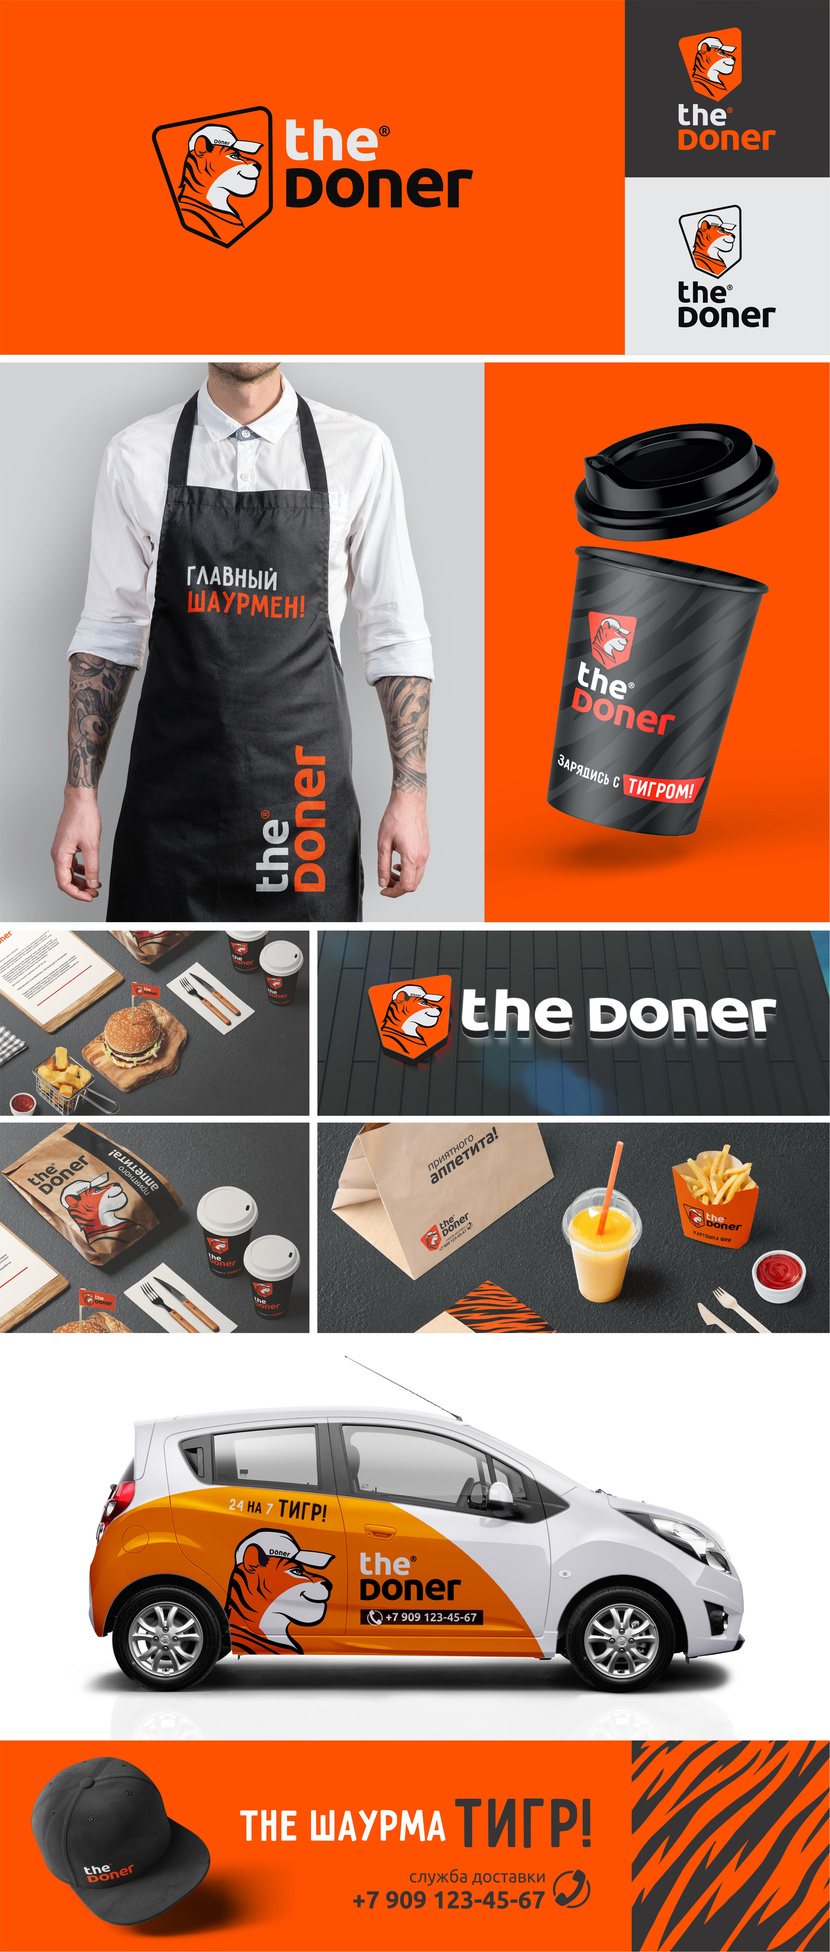 the Doner - Логотип для кафе быстрого питания